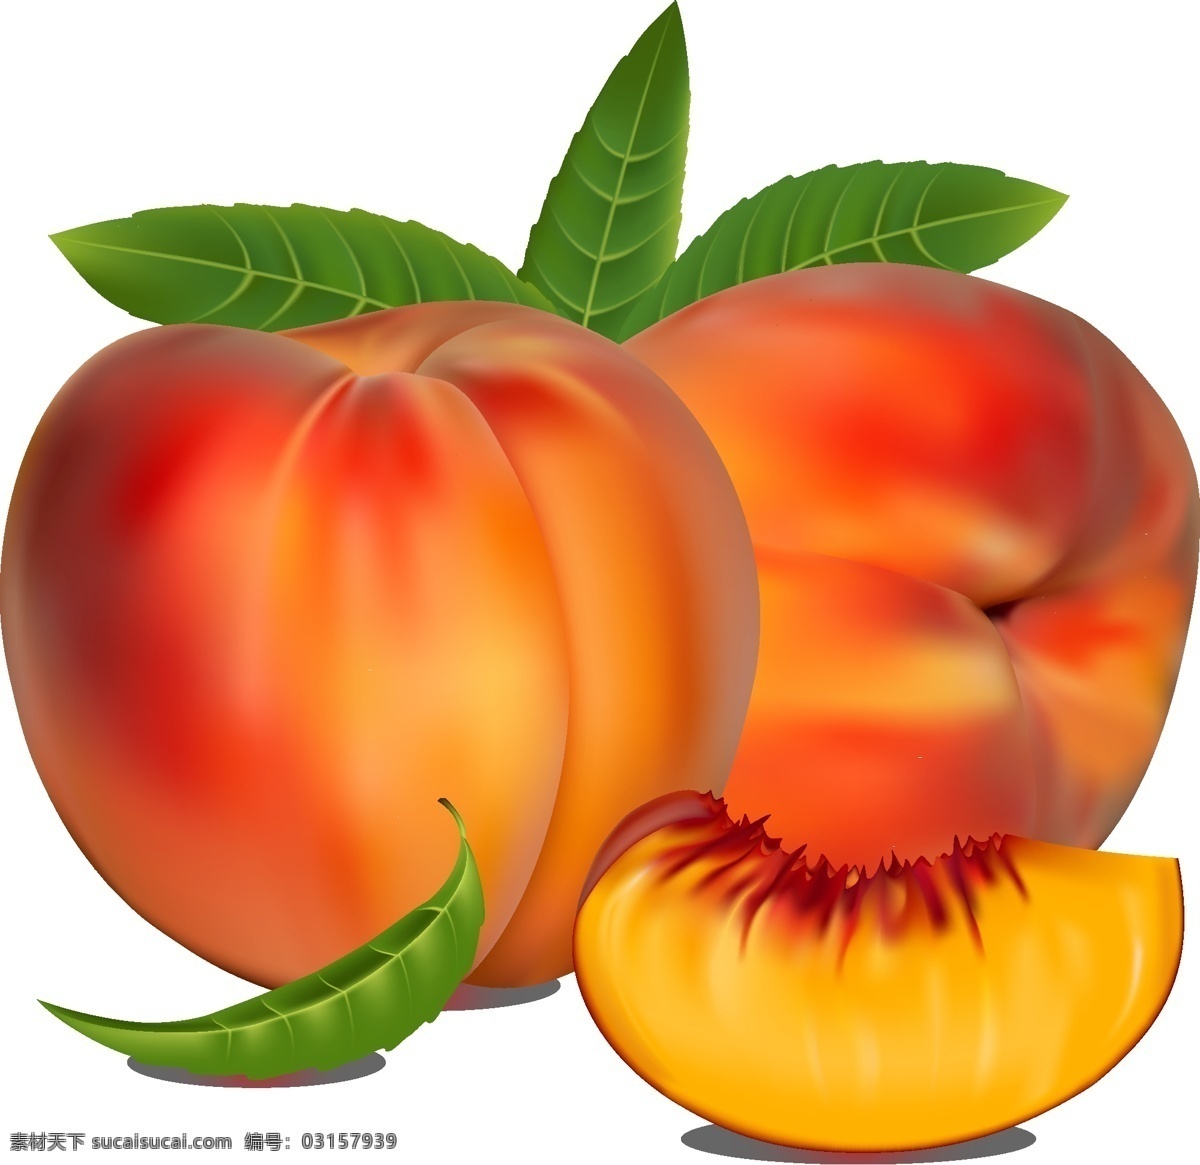 矢量 桃子 彩色 餐饮美食 生活百科 水果 写实 模板下载 矢量桃子 矢量图 日常生活